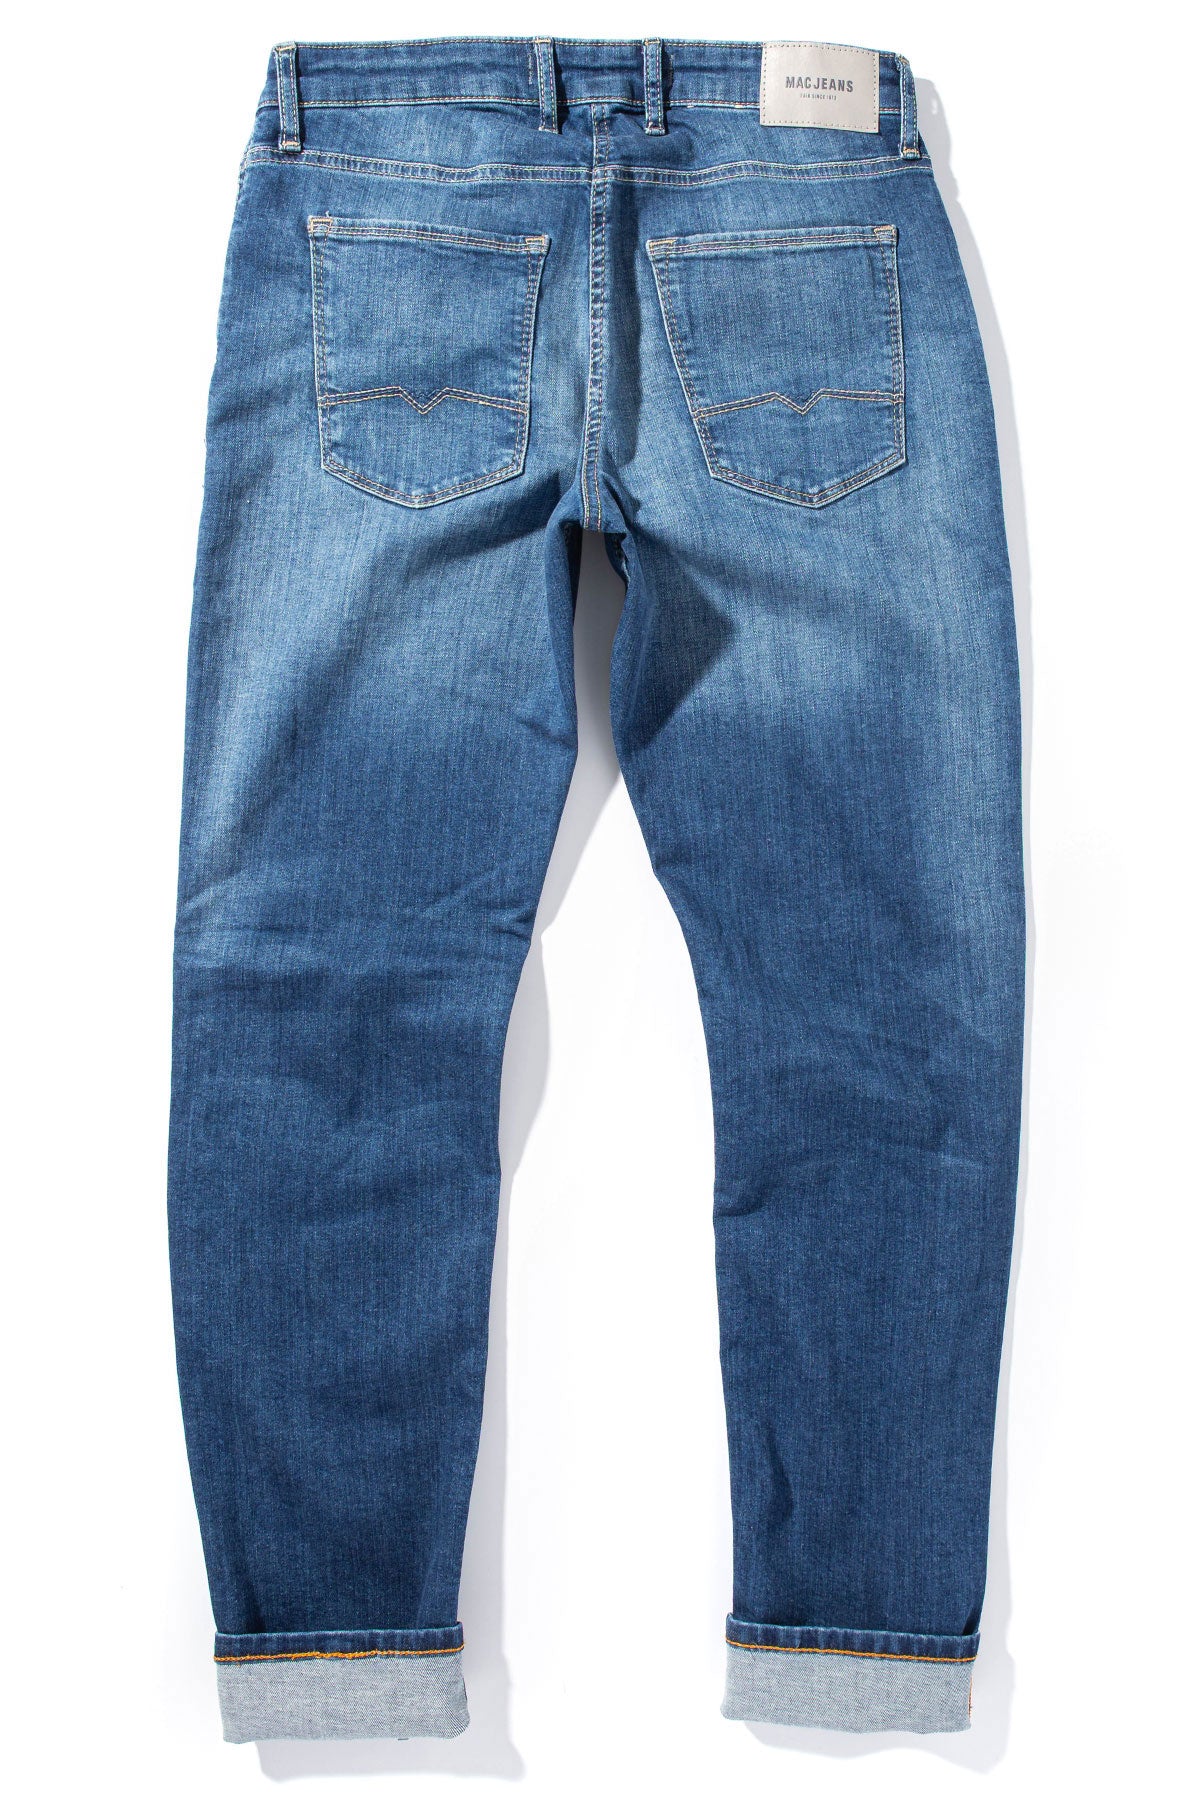 MAC Greg Slim Jeans in Blue Vintage Wash - AXEL'S